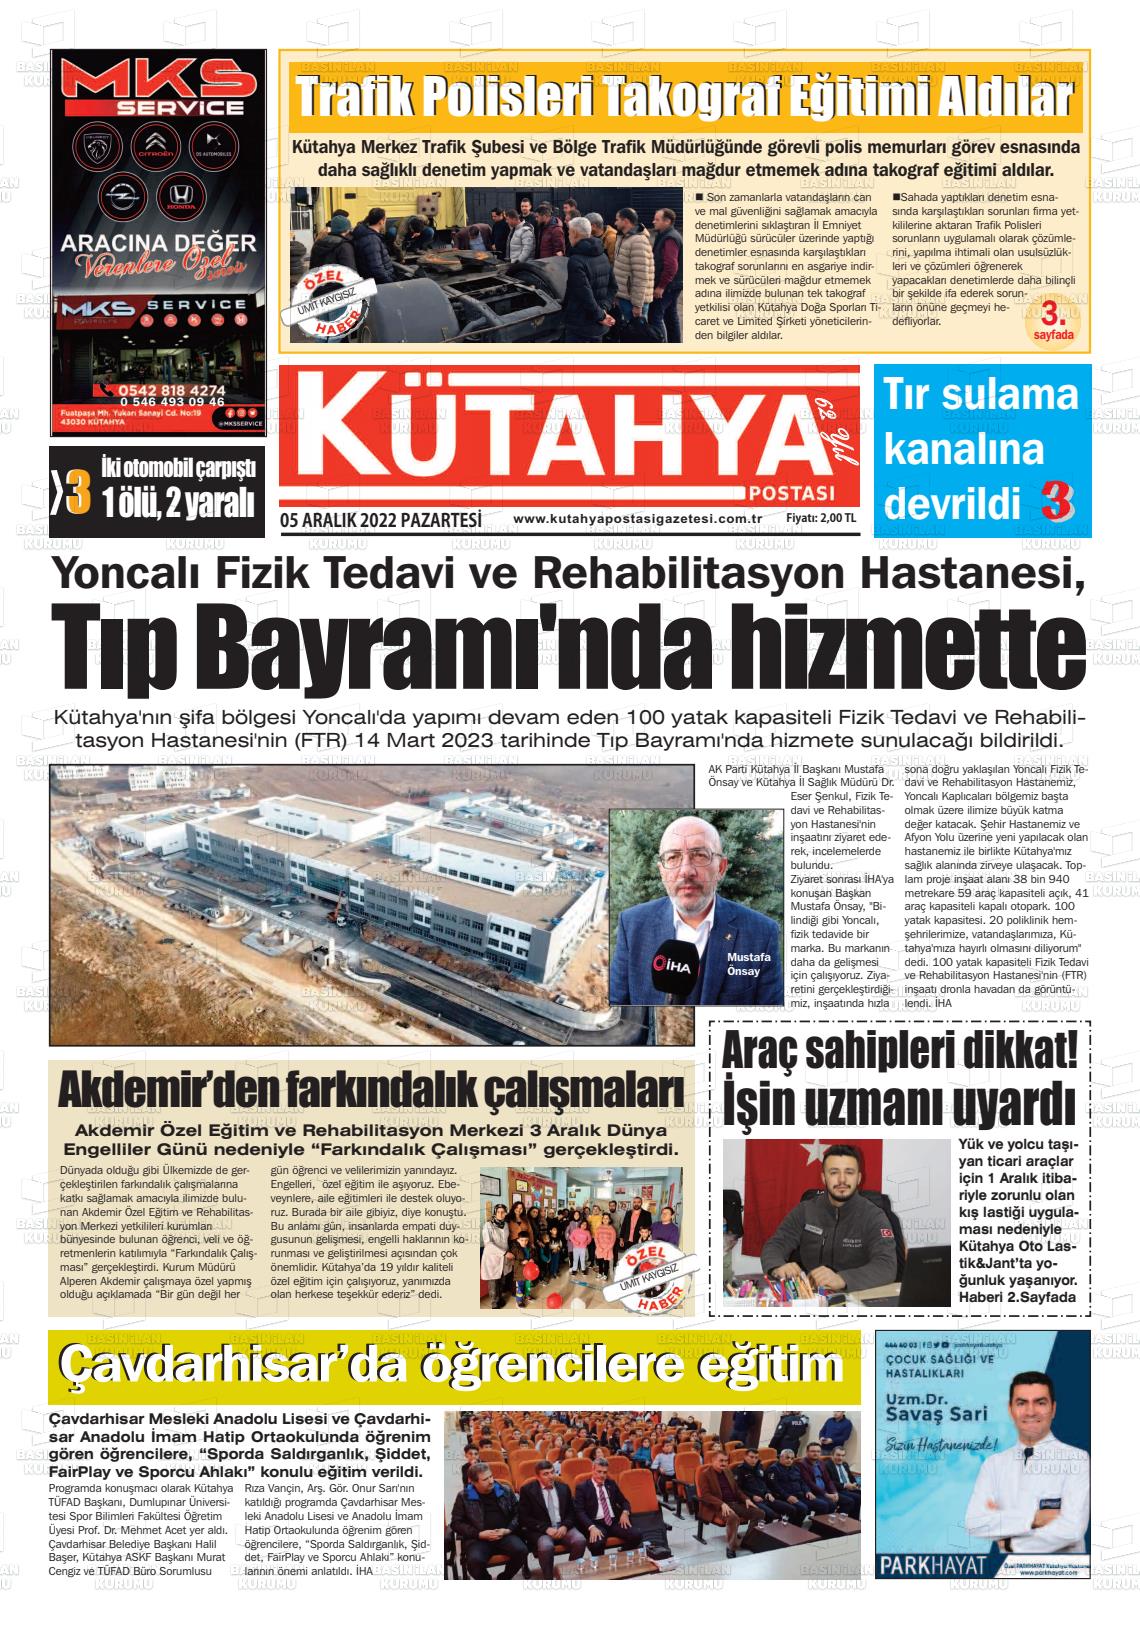 05 Aralık 2022 Kütahya Postası Gazete Manşeti